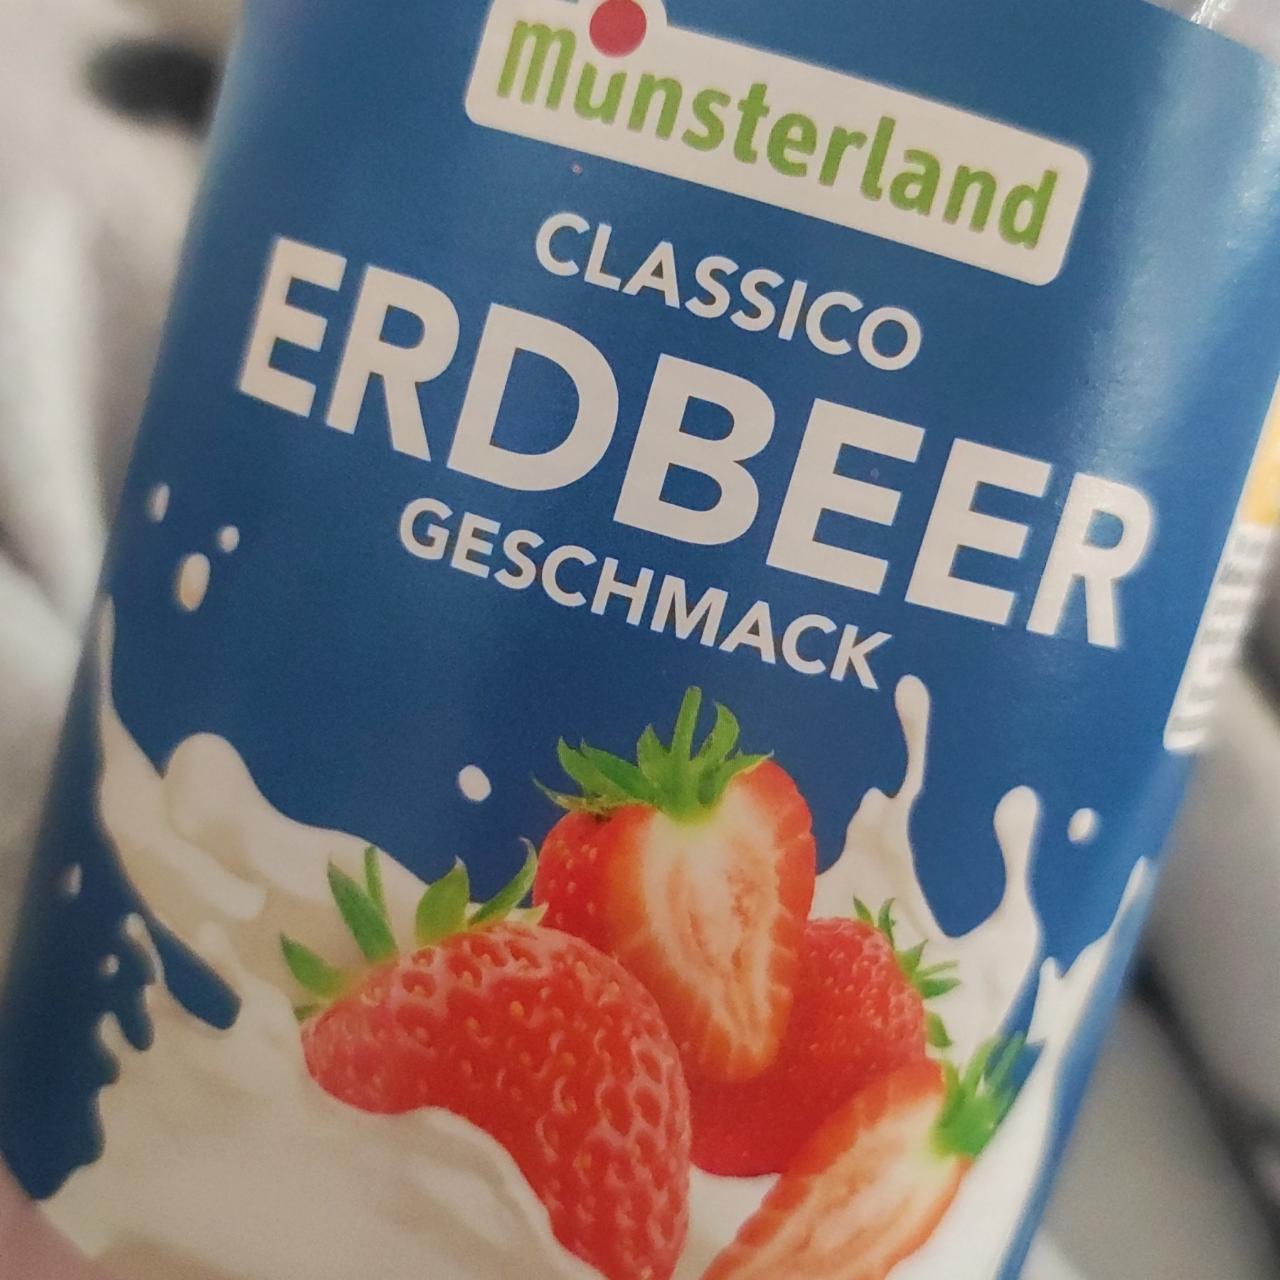 Fotografie - Erdbeer Geschmack Classico Münsterland